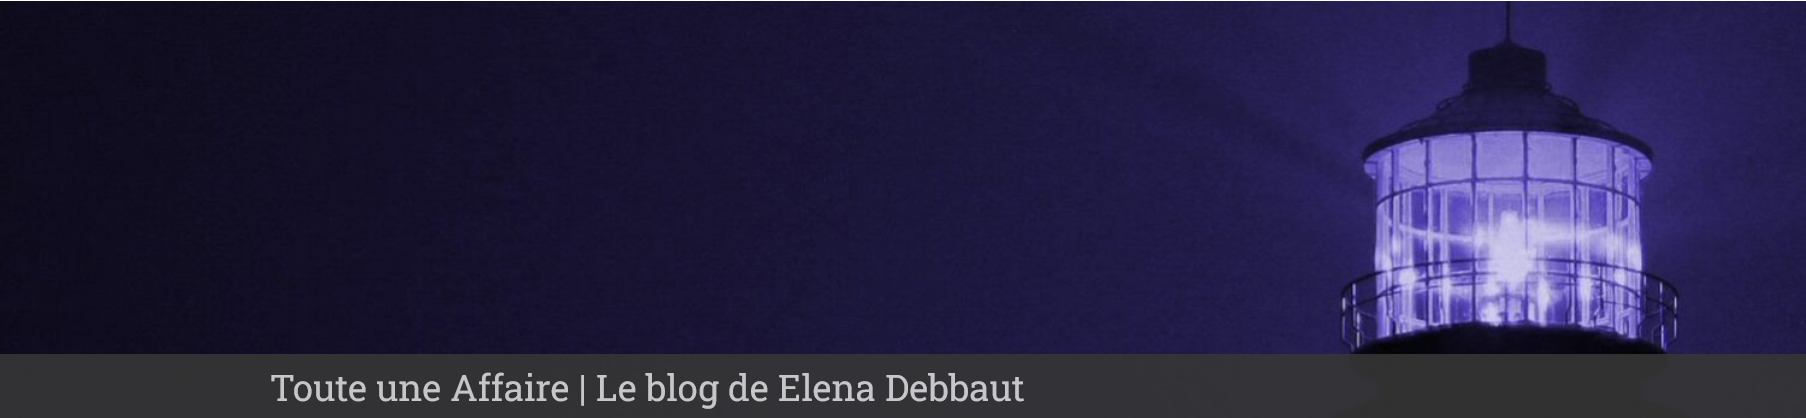 Toute une Affaire - Le Blog de Elena Debbaut sur le site du journal LeTemps.ch